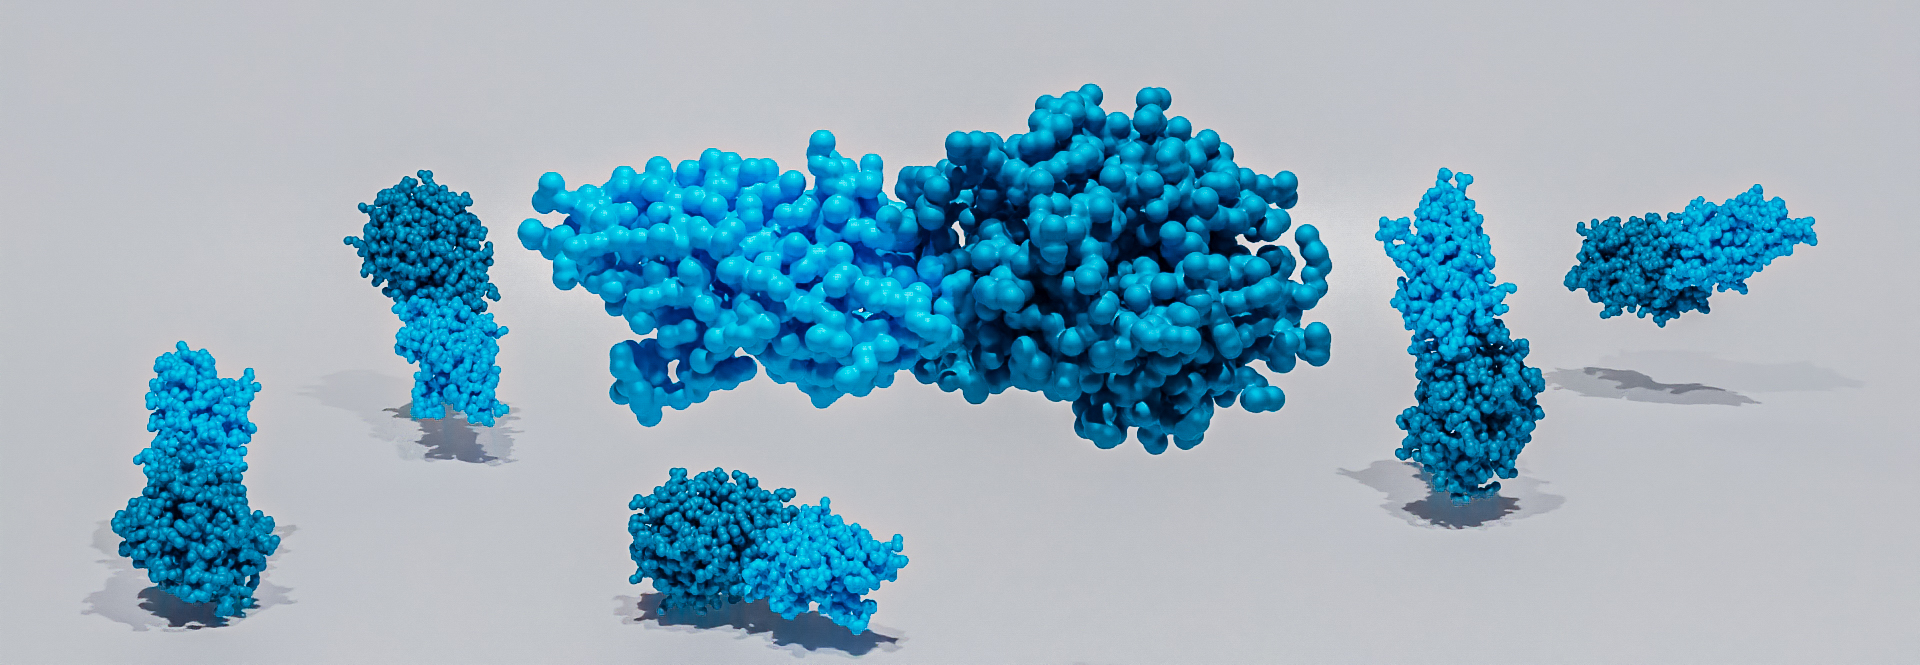 Nanobody characterization. 3D Render of nanobodies